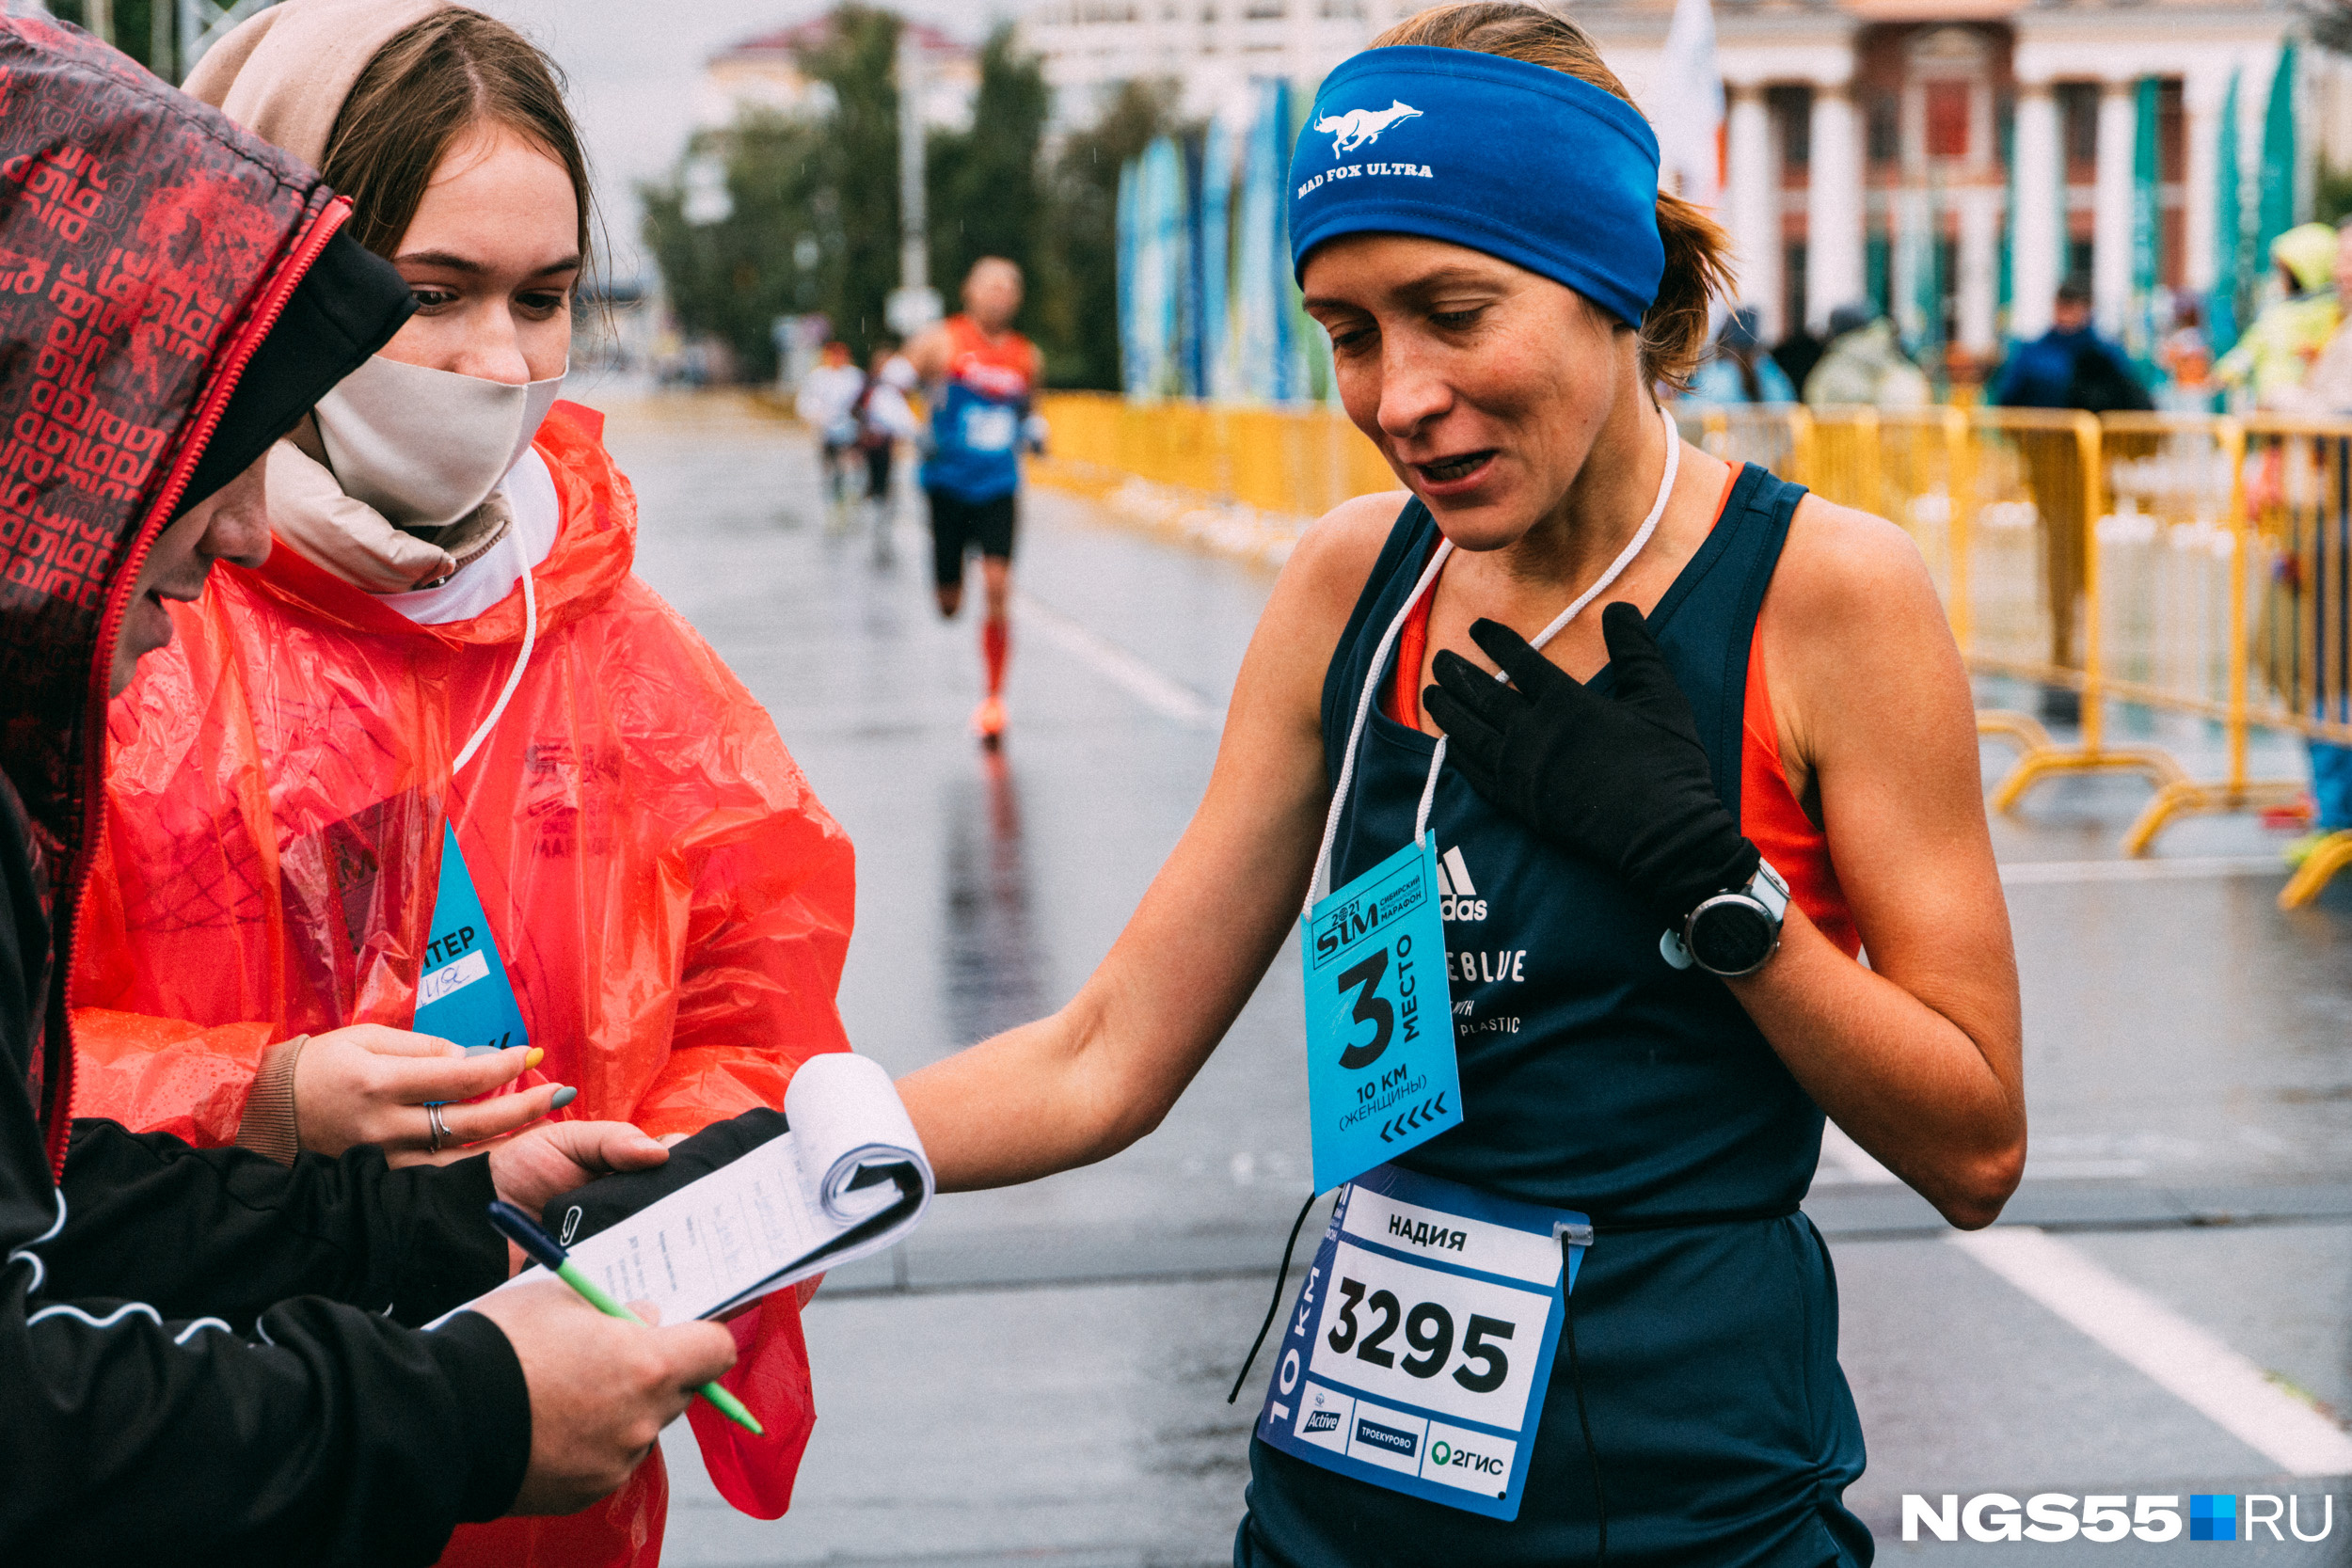 Надия Салахова из Москвы пришла к финишу третьей среди спортсменок, бежавших марафон в 10 километров